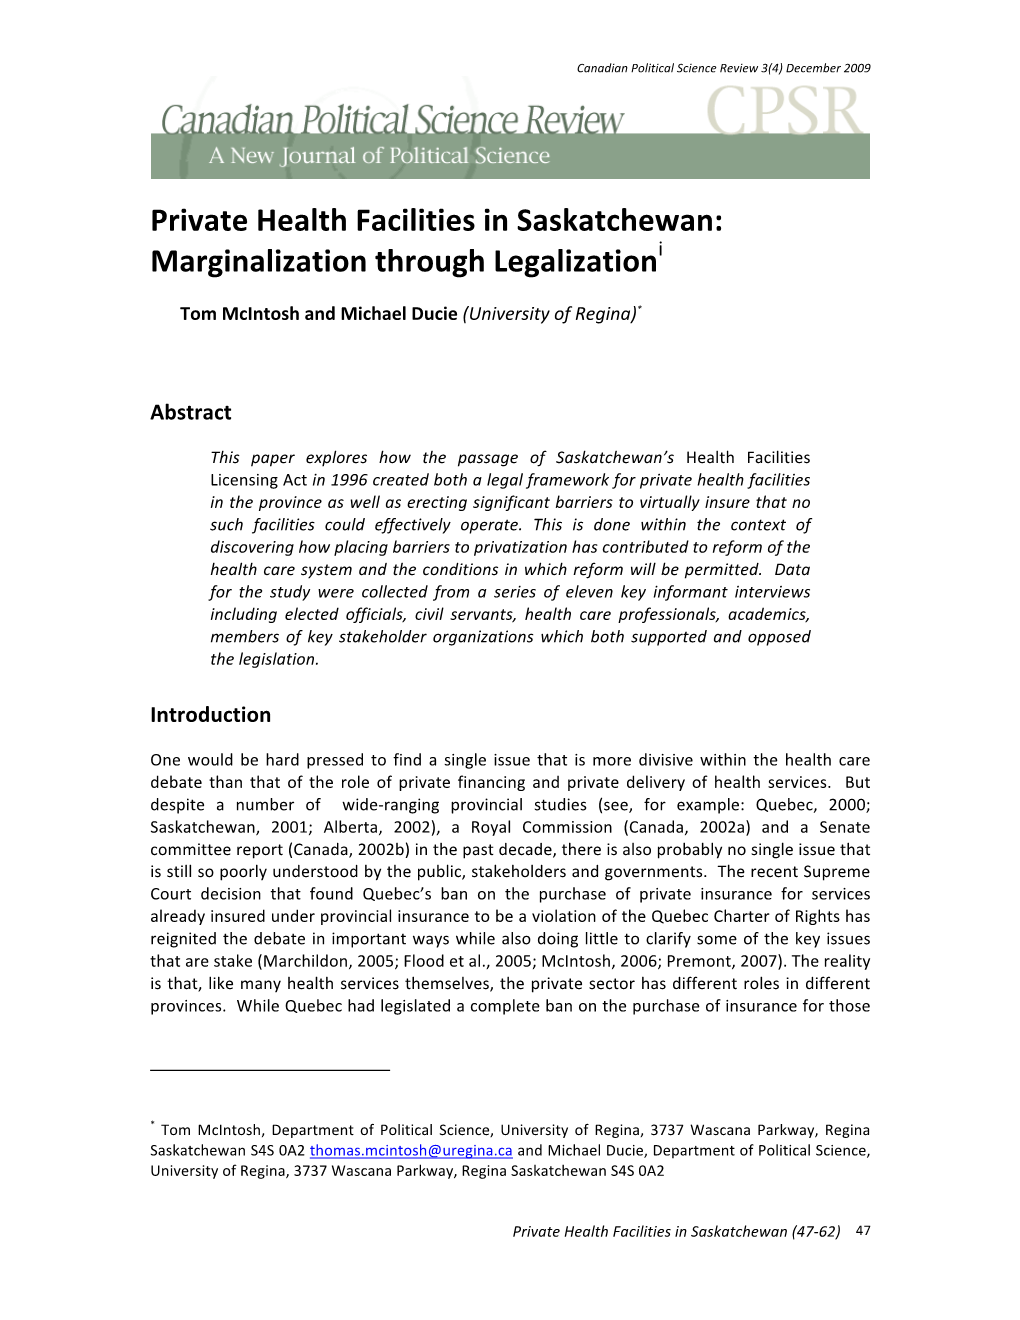 Private Health Facilities in Saskatchewan: Marginalization Through Legalizationi